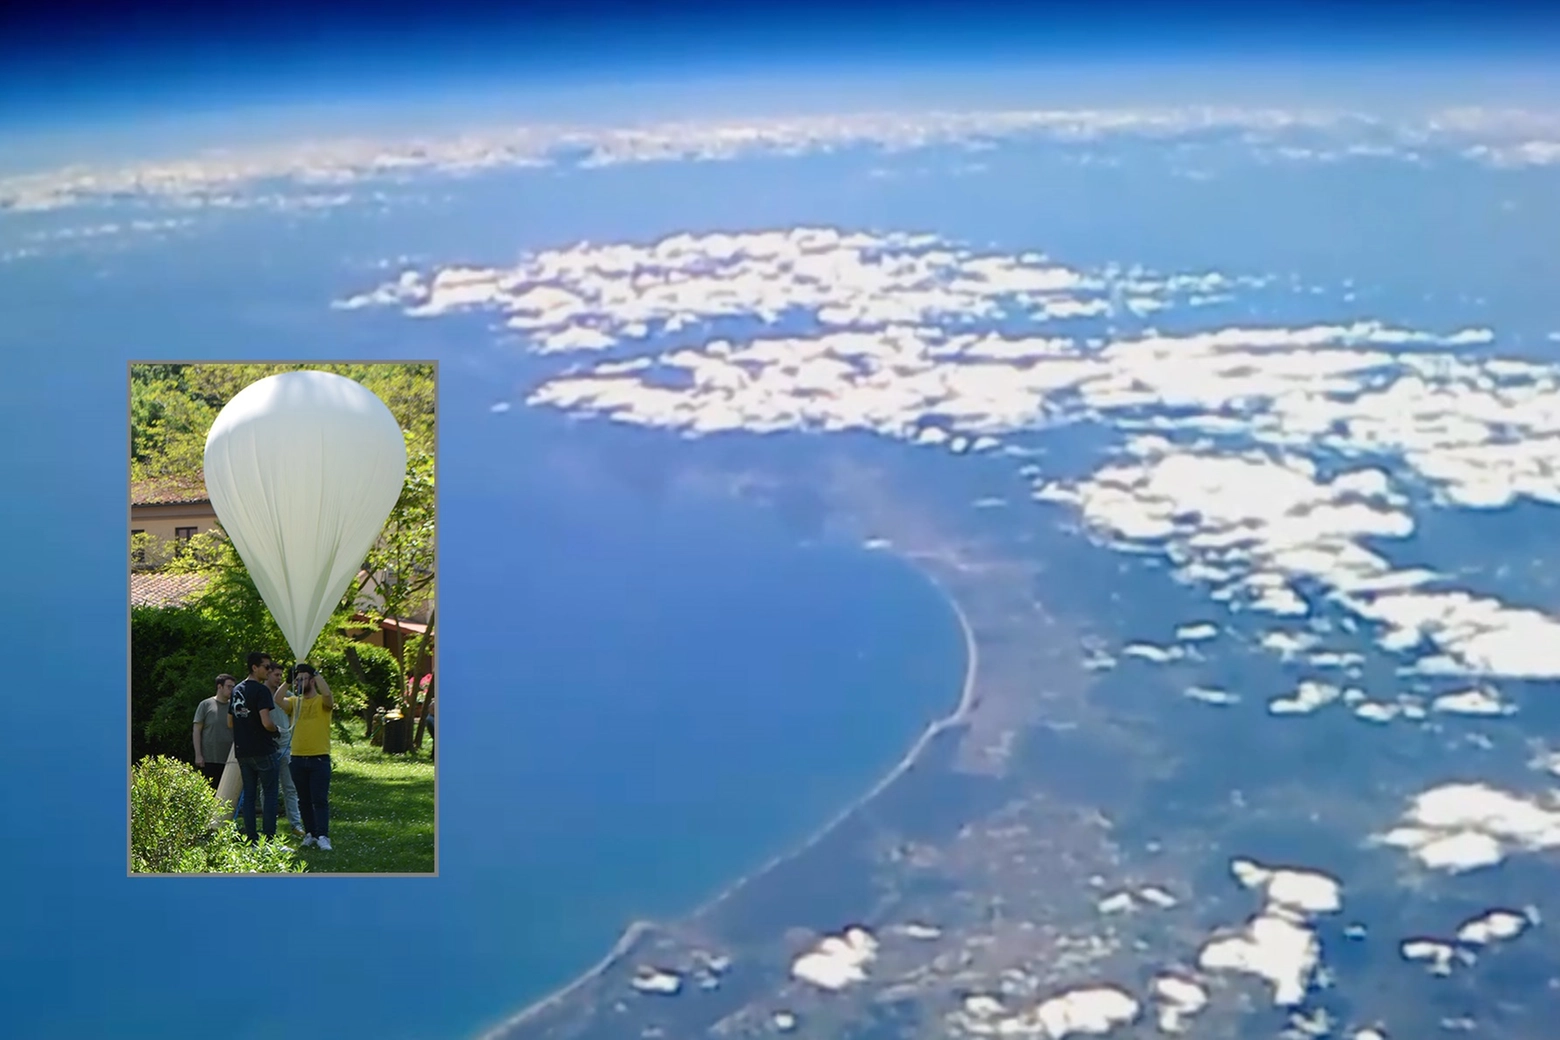 Il lancio del pallone sonda e una delle immagini della costa toscana